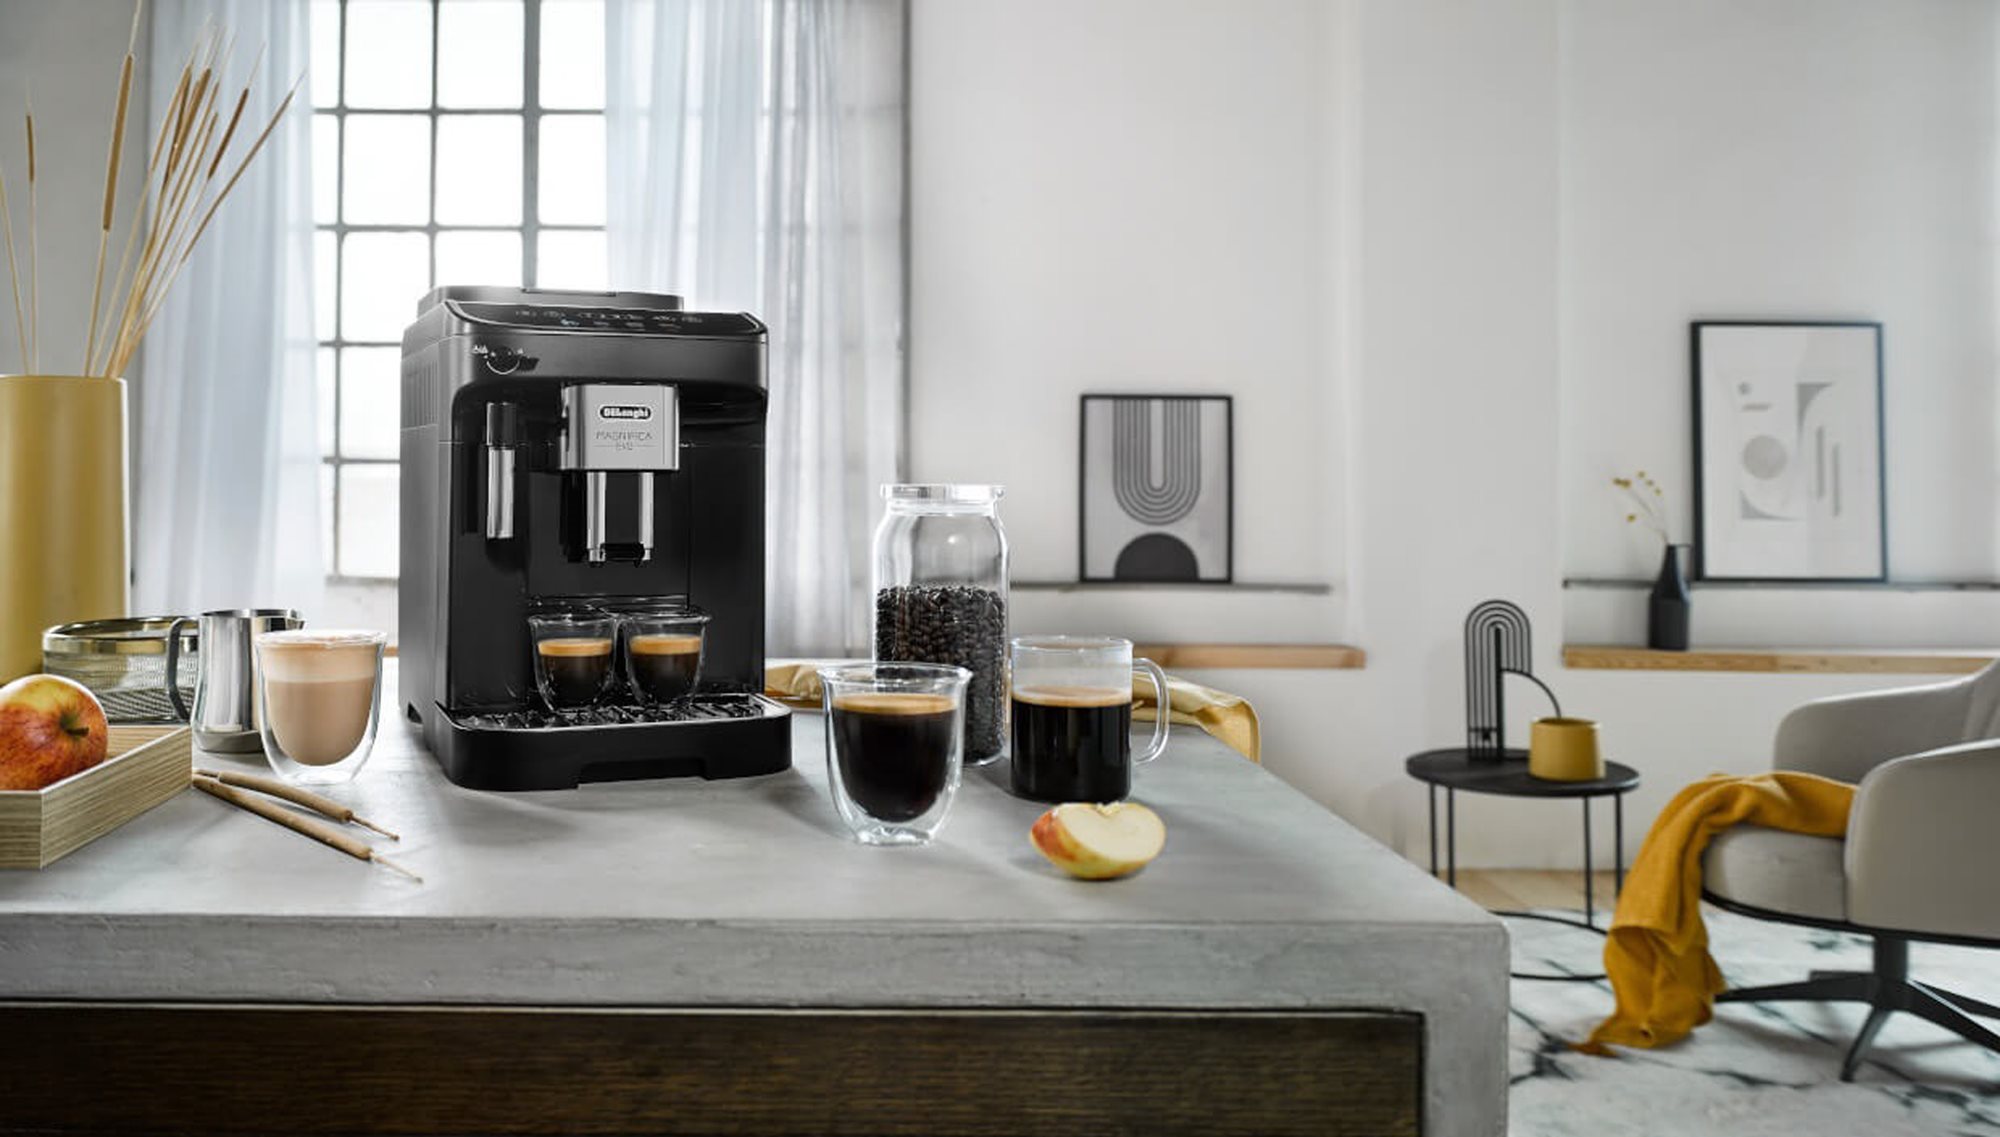 Cafetera espresso automática, 1450W, PrimaDonna Soul, Metal Black -  DeLonghi